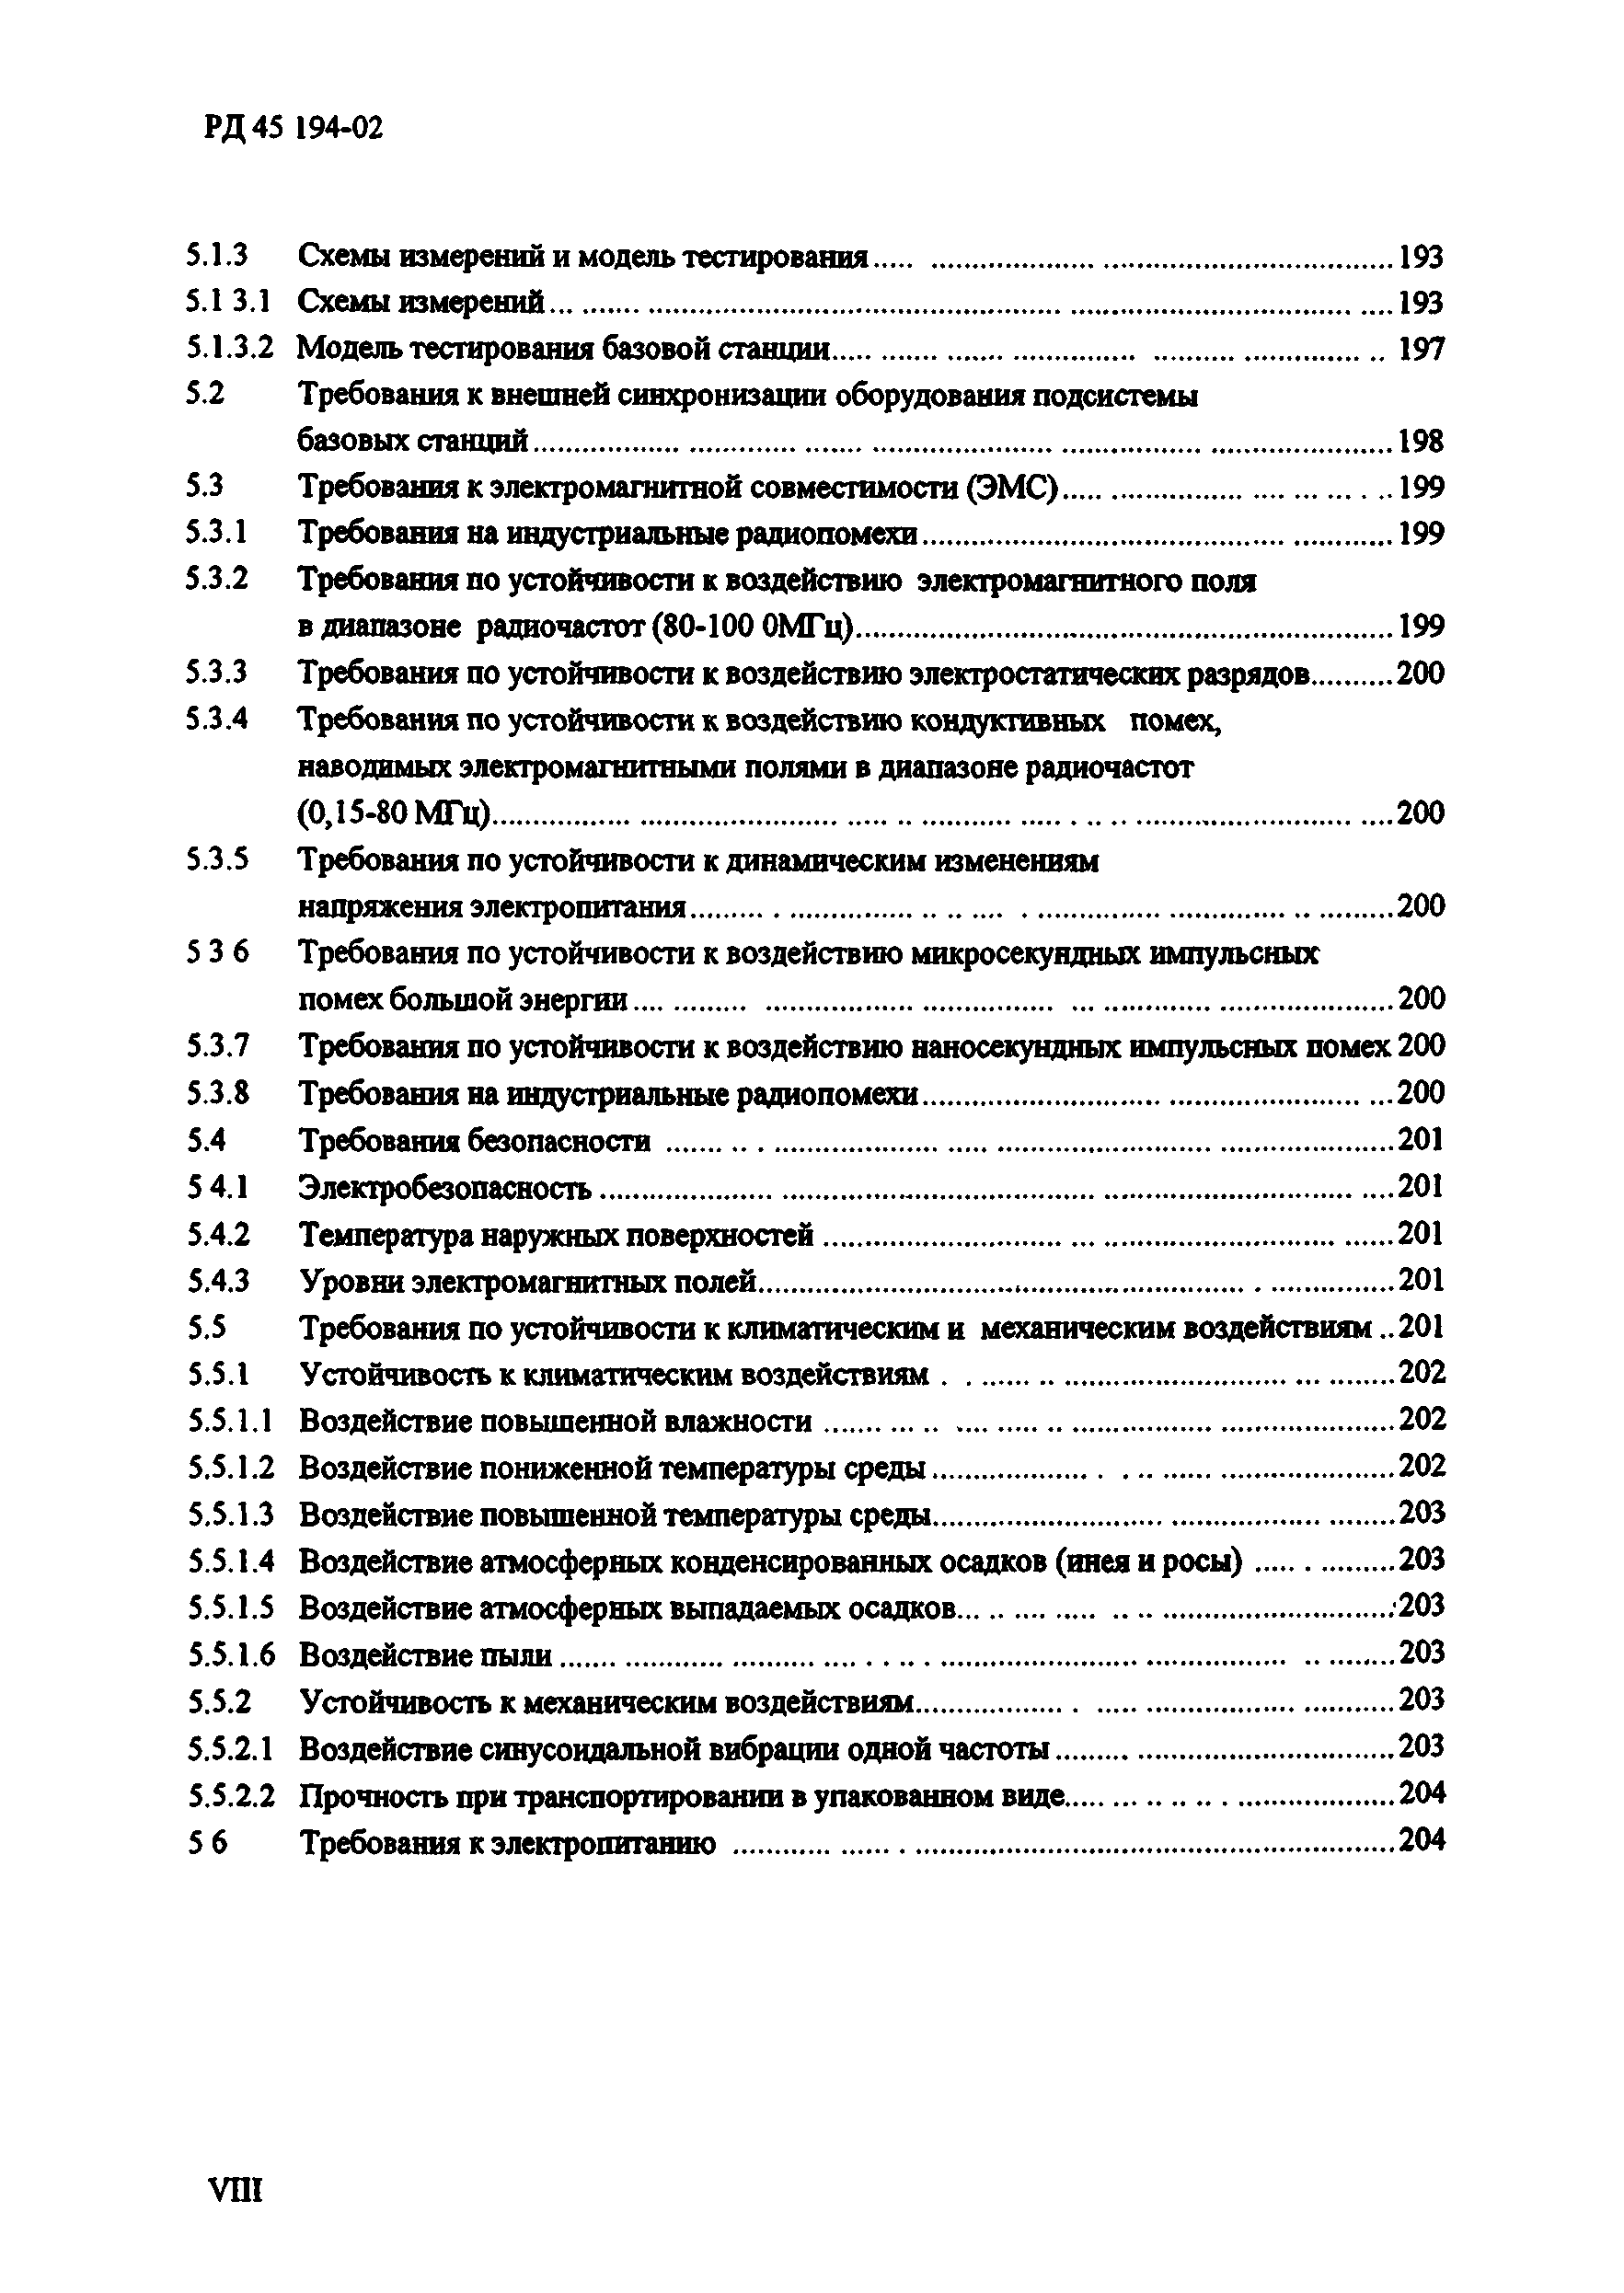 РД 45.194-2002